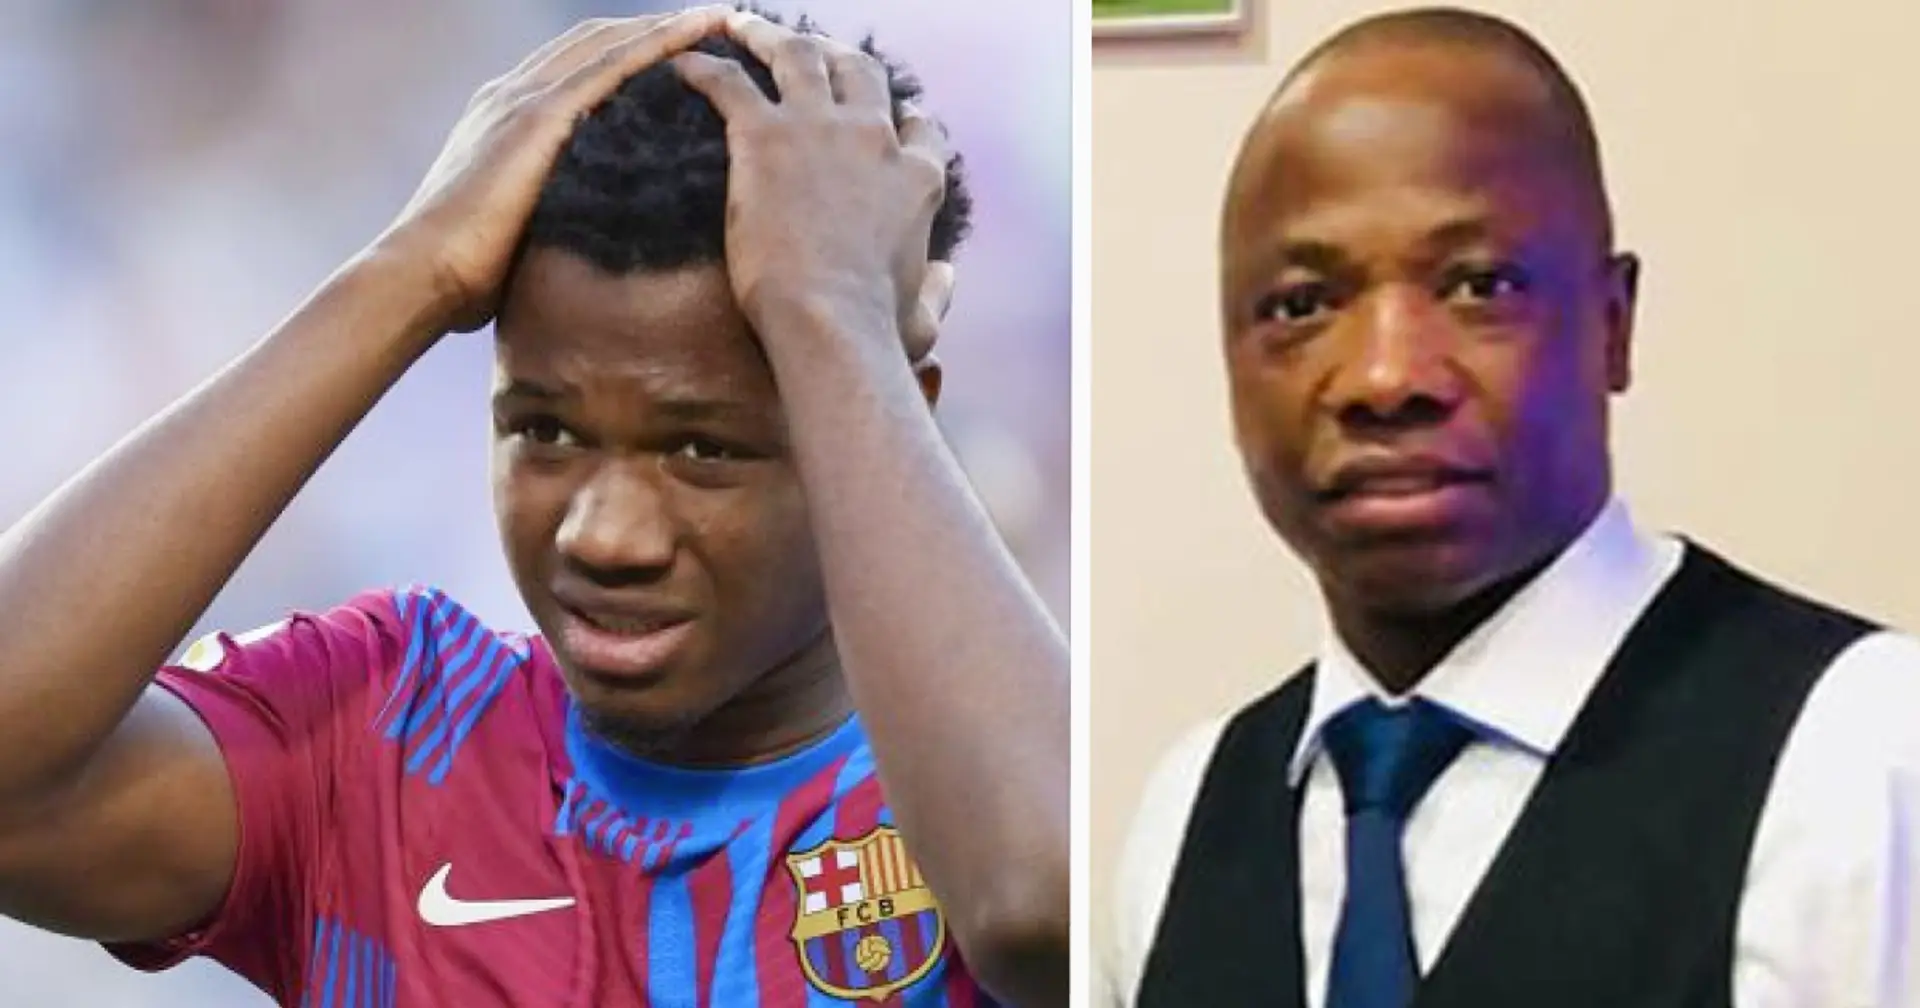 'Estoy muy enfadado con el club': el padre de Fati se pronuncia en contra del trato de su hijo en el Barça, le dice a Ansu que se vaya